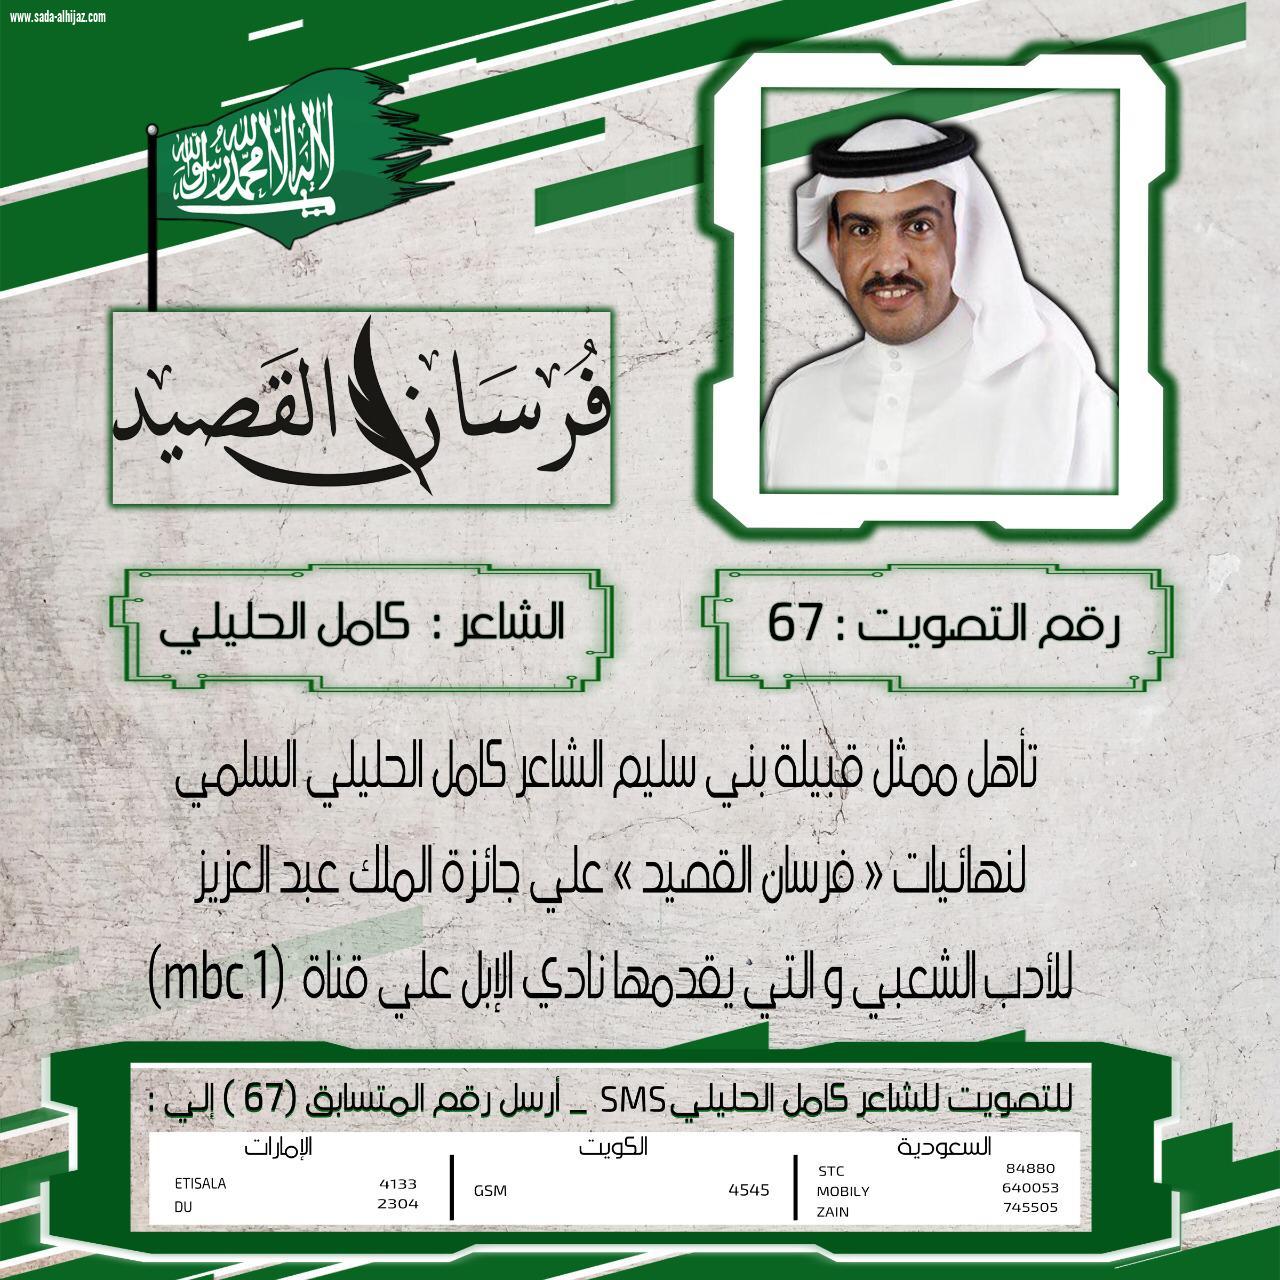 الشاعر السعودي كاملُ الحليلي السلمي يشكر قبيلته بعد حصد بطاقة التأهل إلى نهائيات فرسان القصيد على MBC